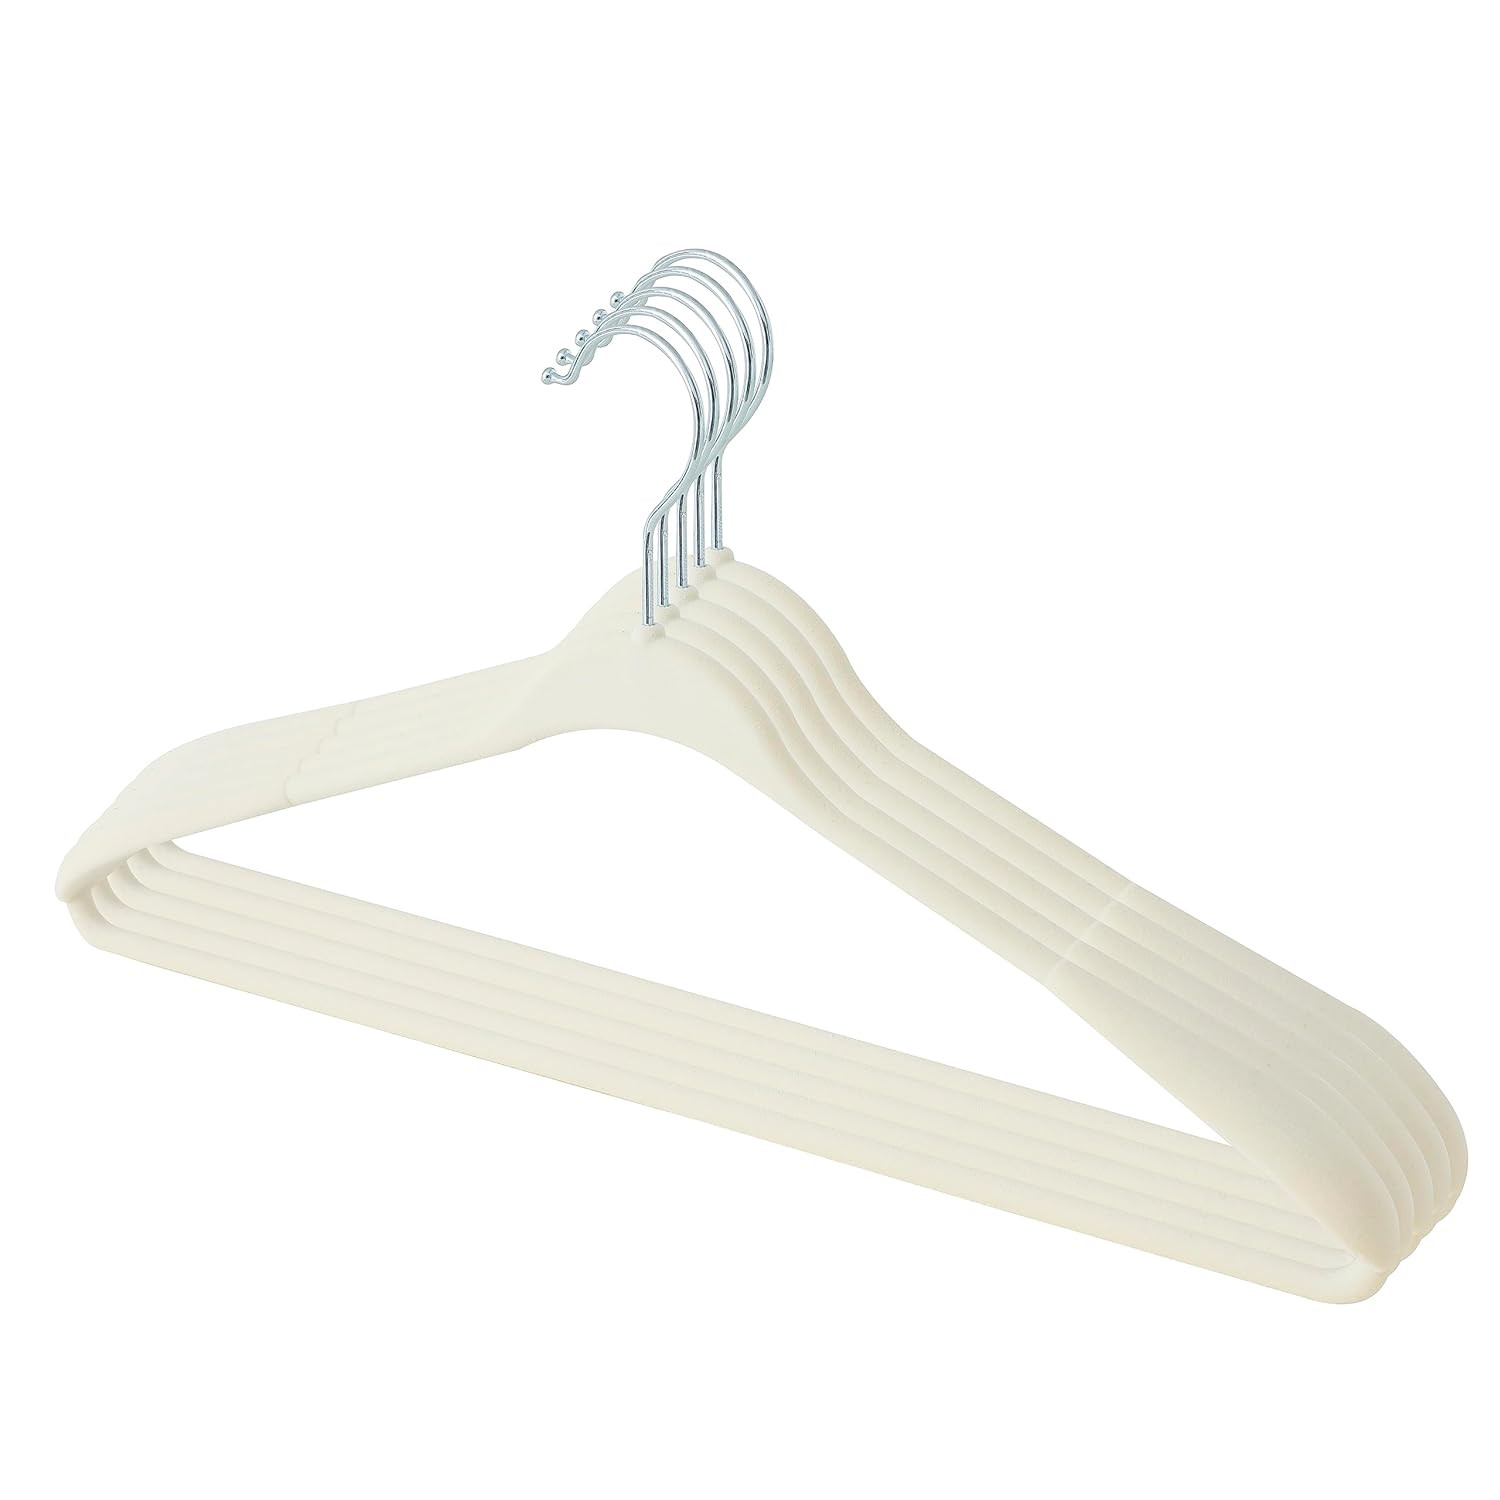 Kuber IndustriesVelvet Cloth Hanger Set of 5 With Chromed Plated Steel Hook (White)